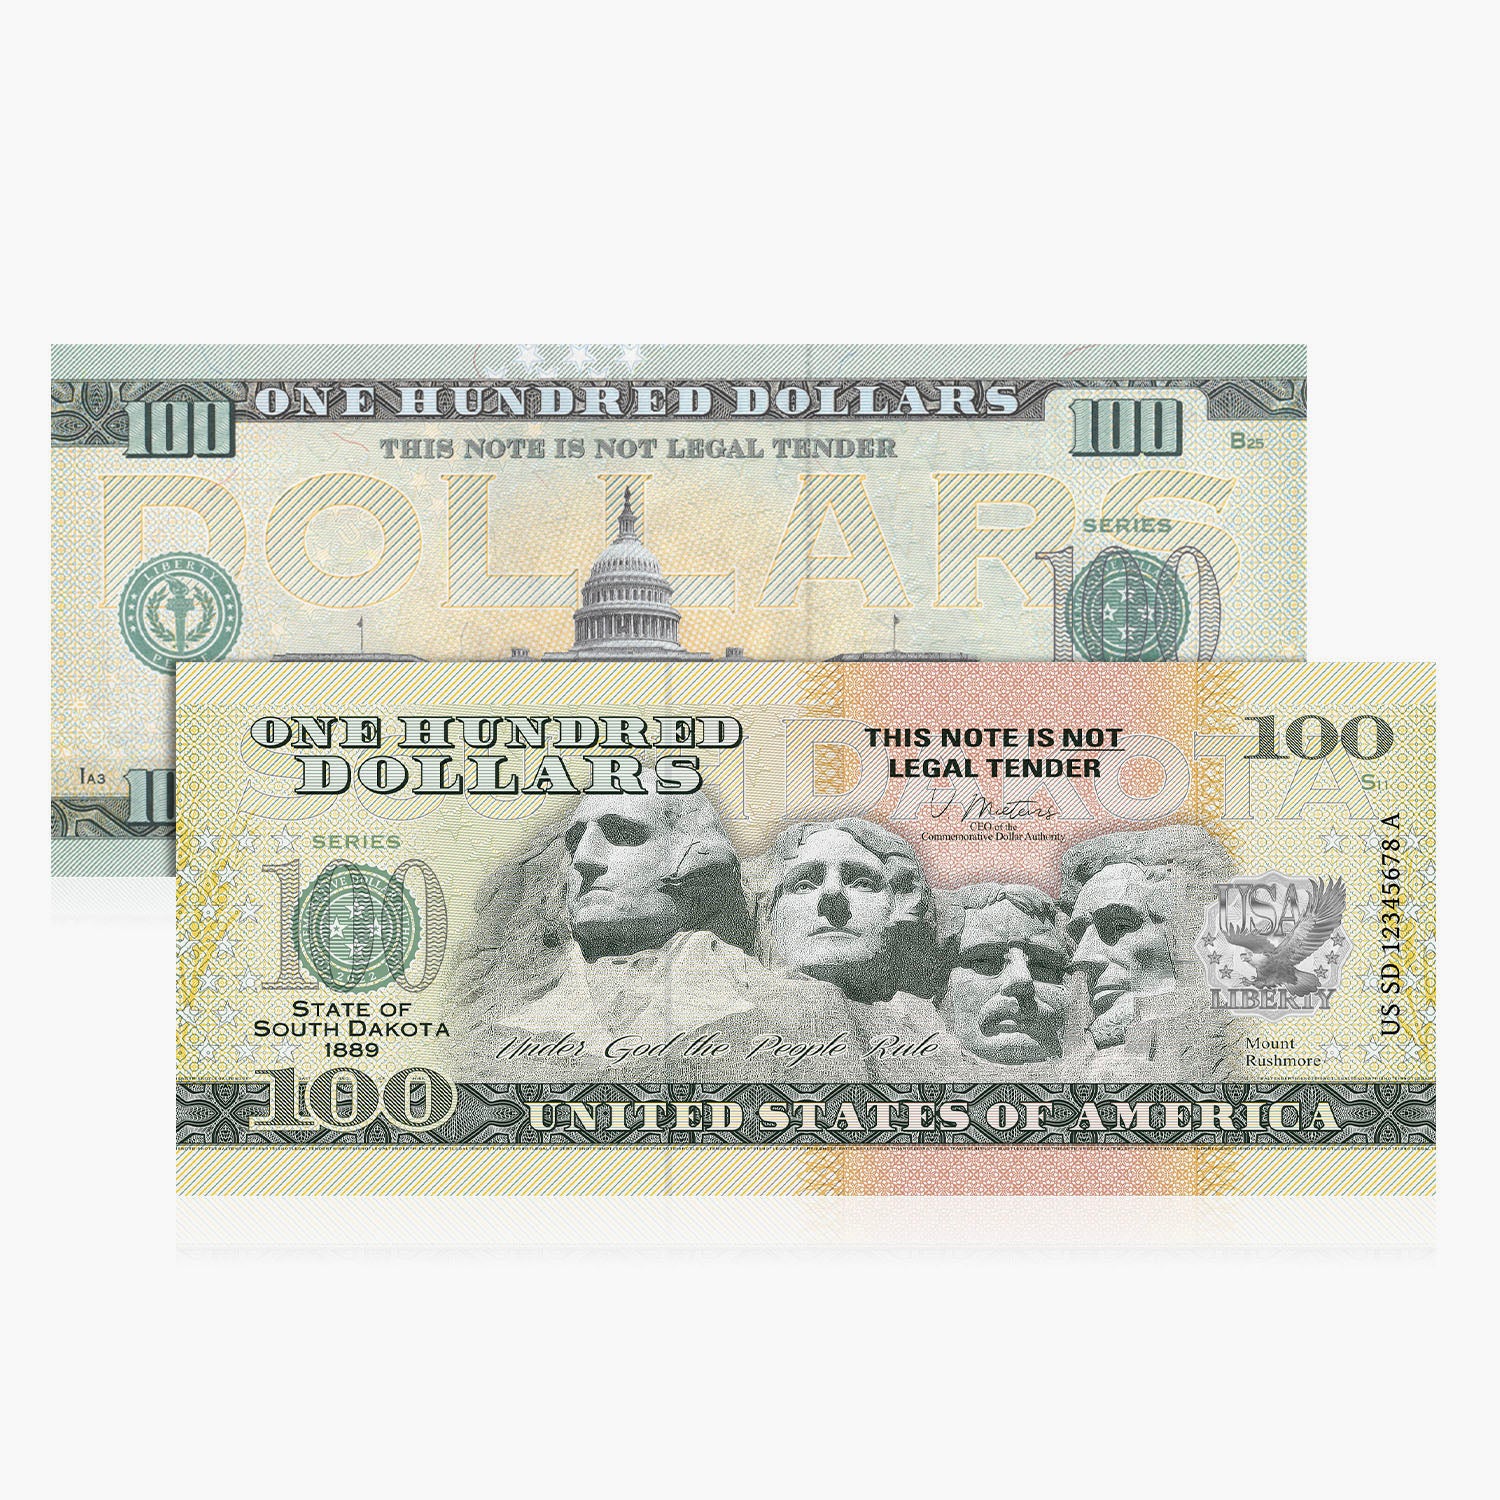 Collection de billets en dollars à collectionner des 50 États des États-Unis